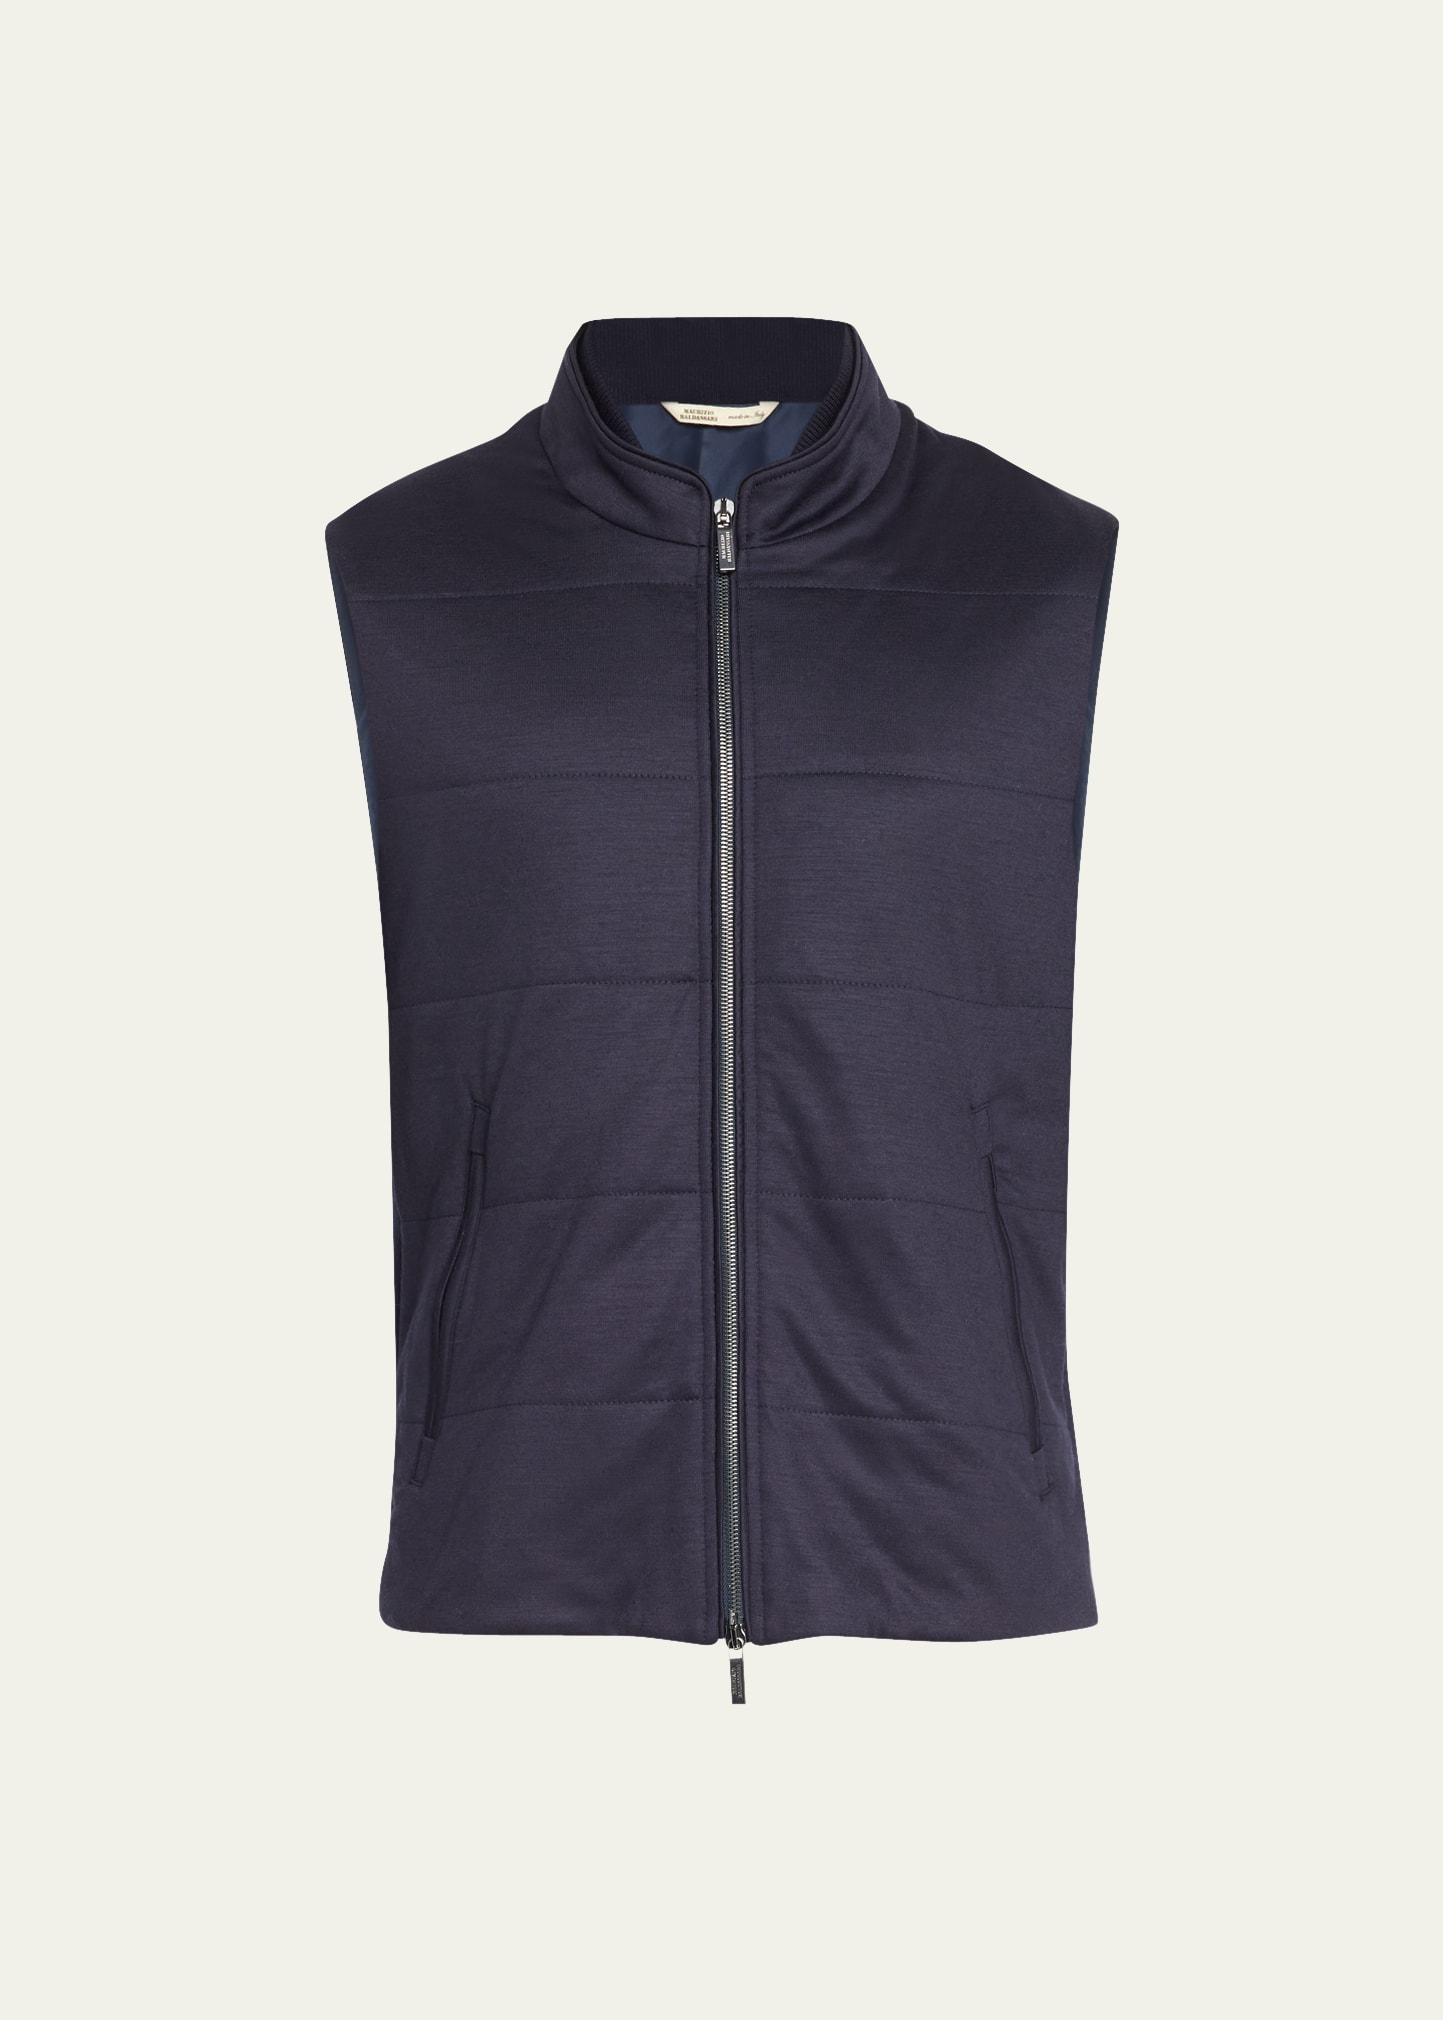 Maurizio Baldassari Men's Jersey Comfort Ful-Zip Vest